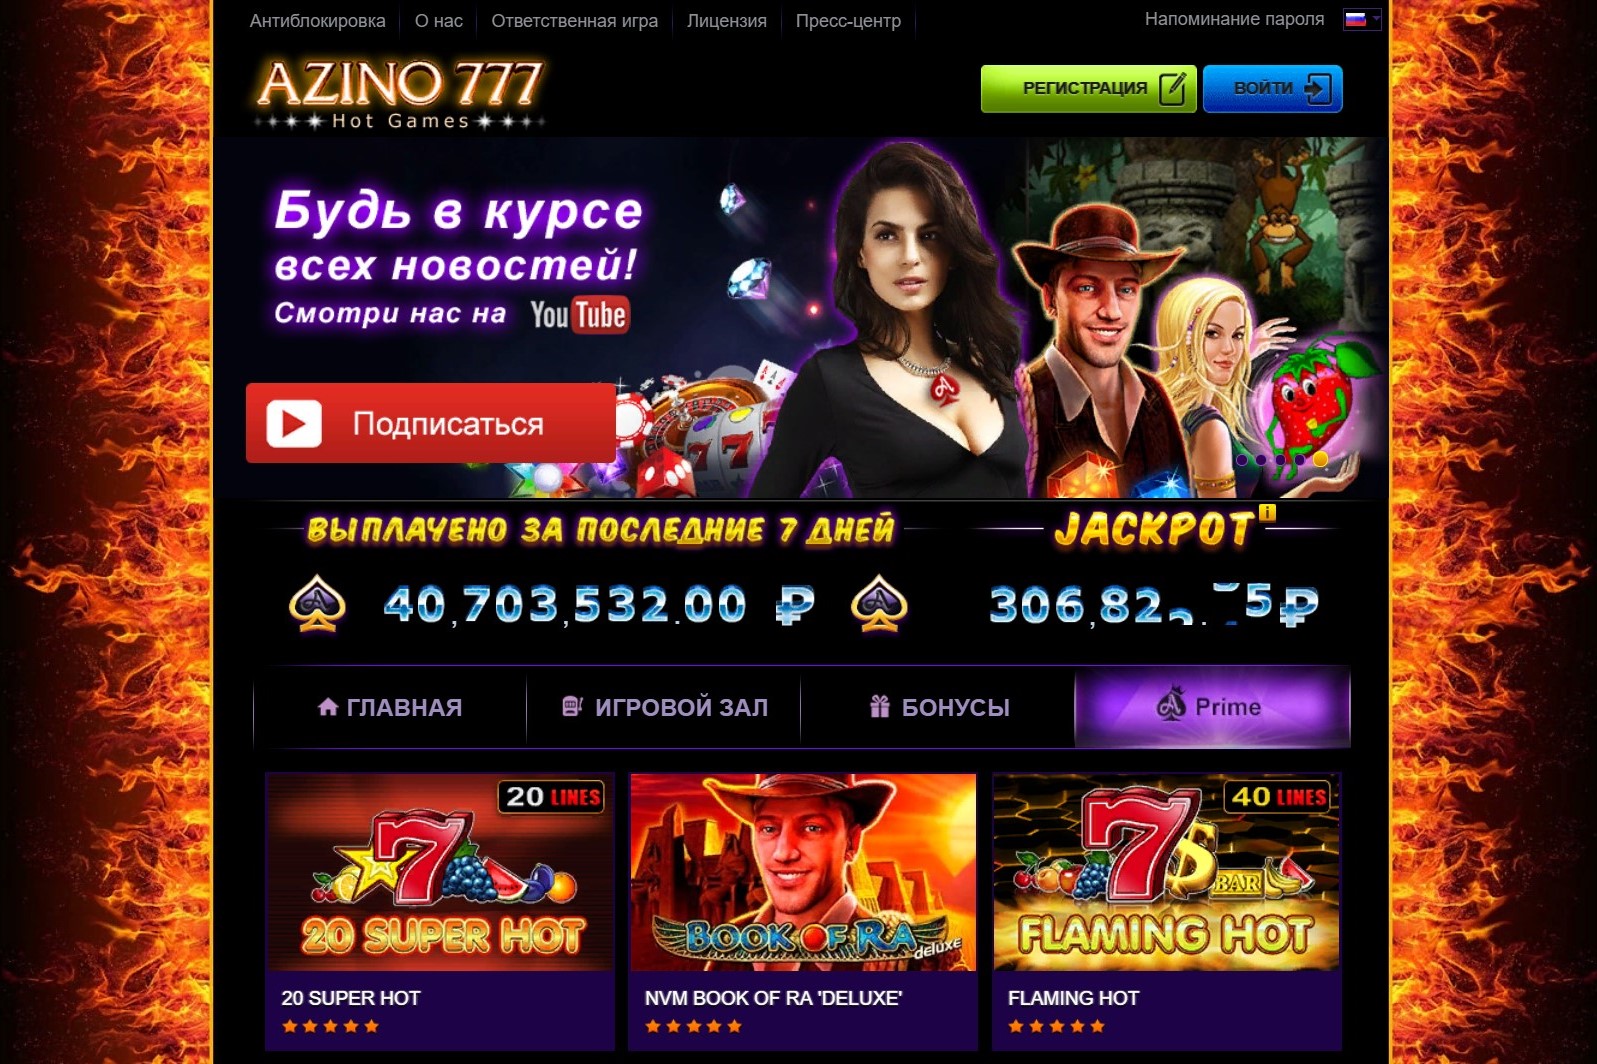 Azino777 сайт казино рояль смотреть онлайн бесплатно в качестве hd 1080